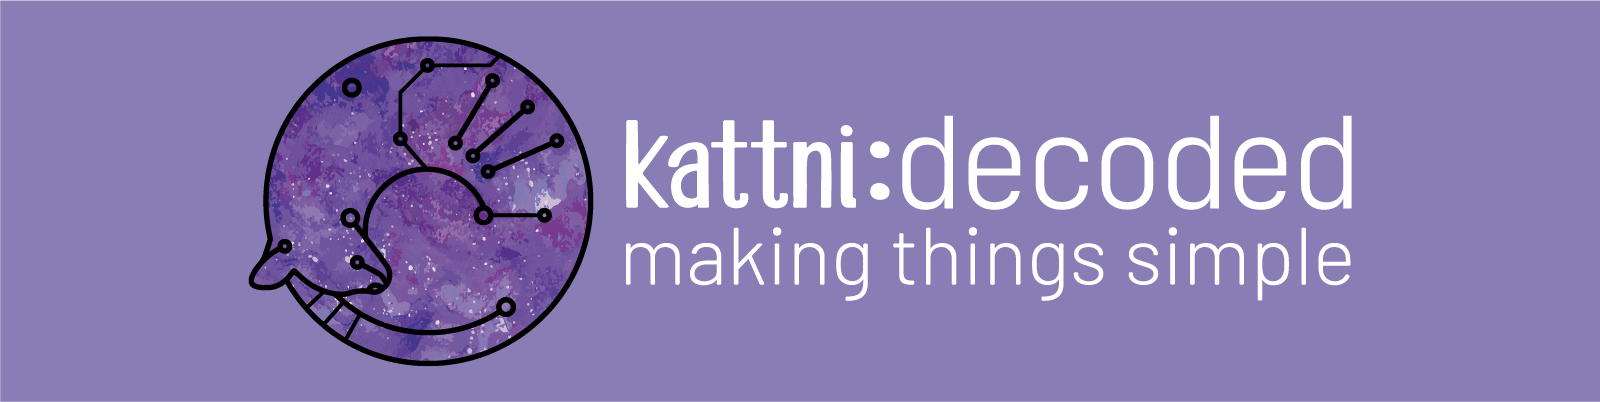 kattni-github-profile-header-image.png